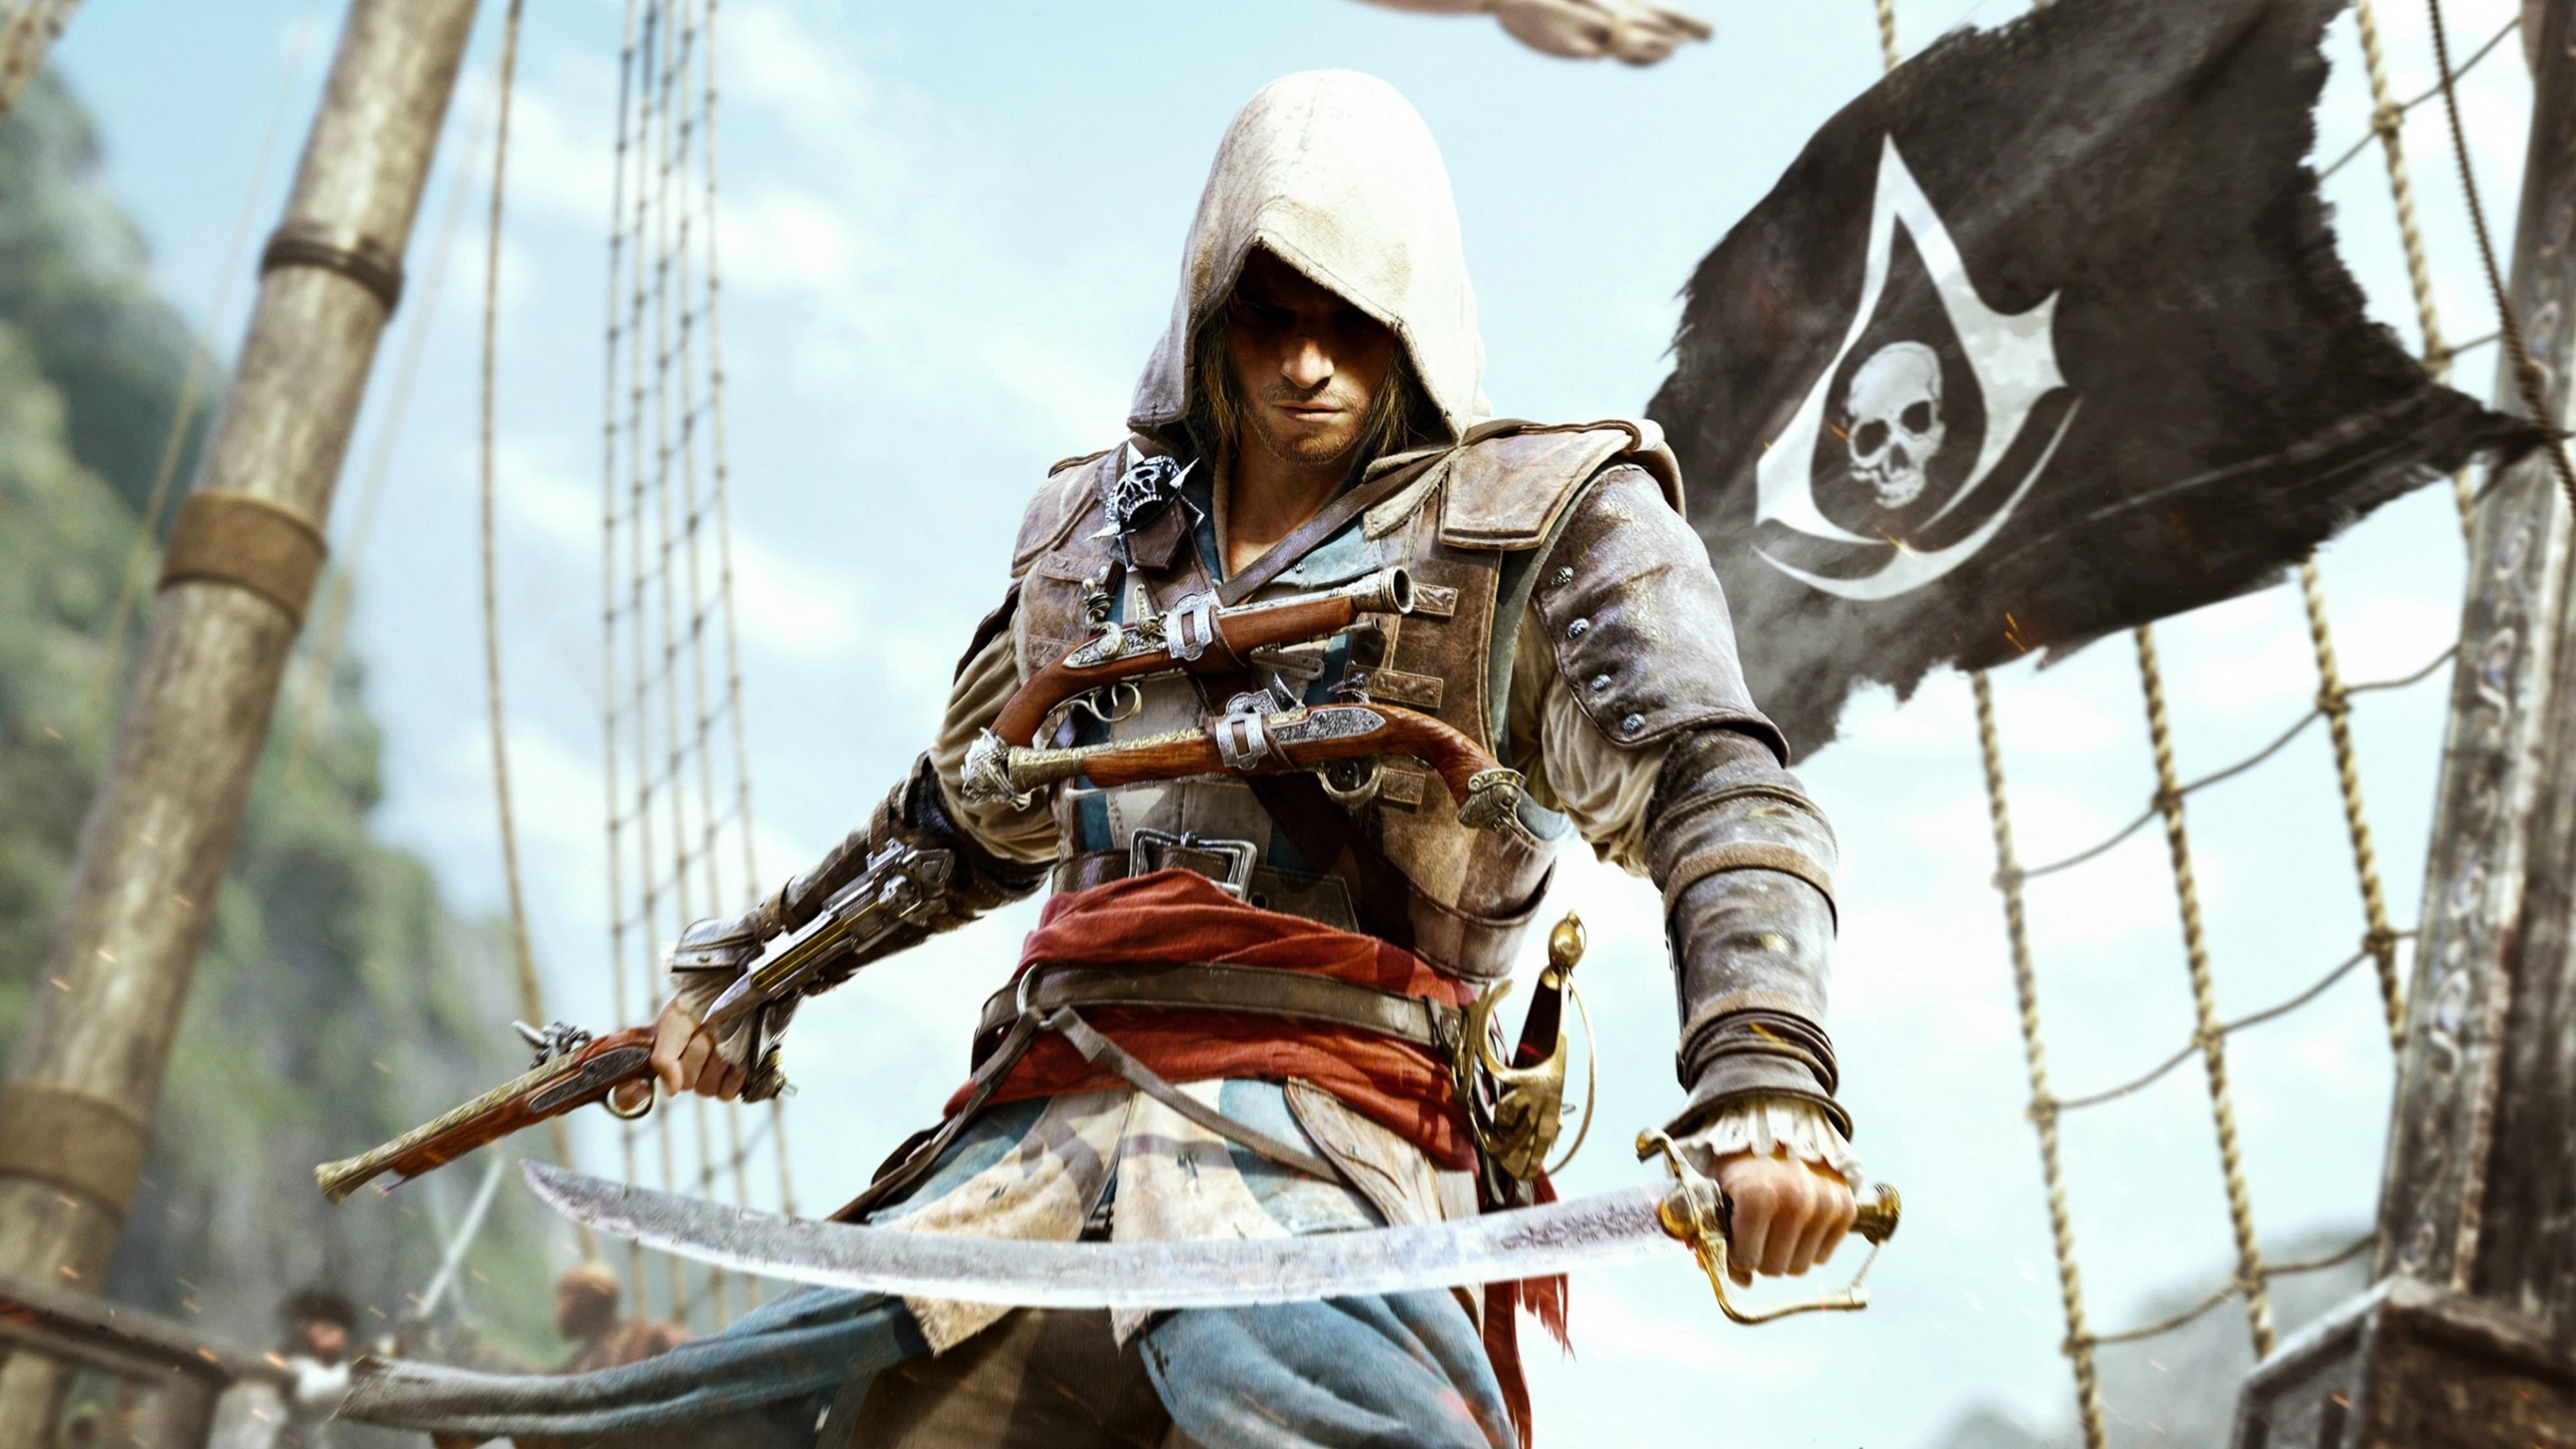 Assassin's Creed IV: Black Flag Wallpaper for Desktop 4K 3840x2160